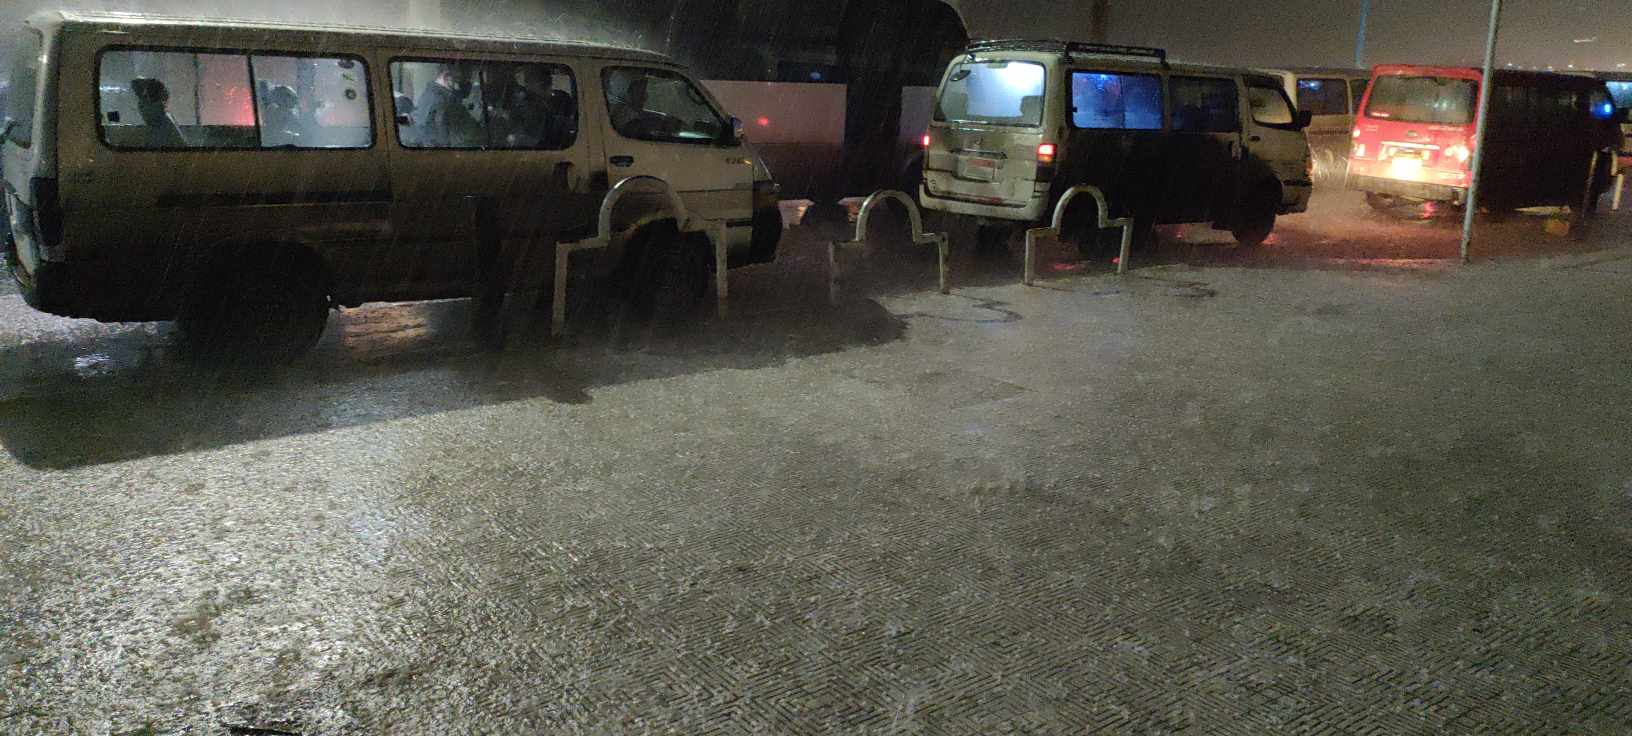 سقوط ثلج وامطار غزيرة على الإسكندرية